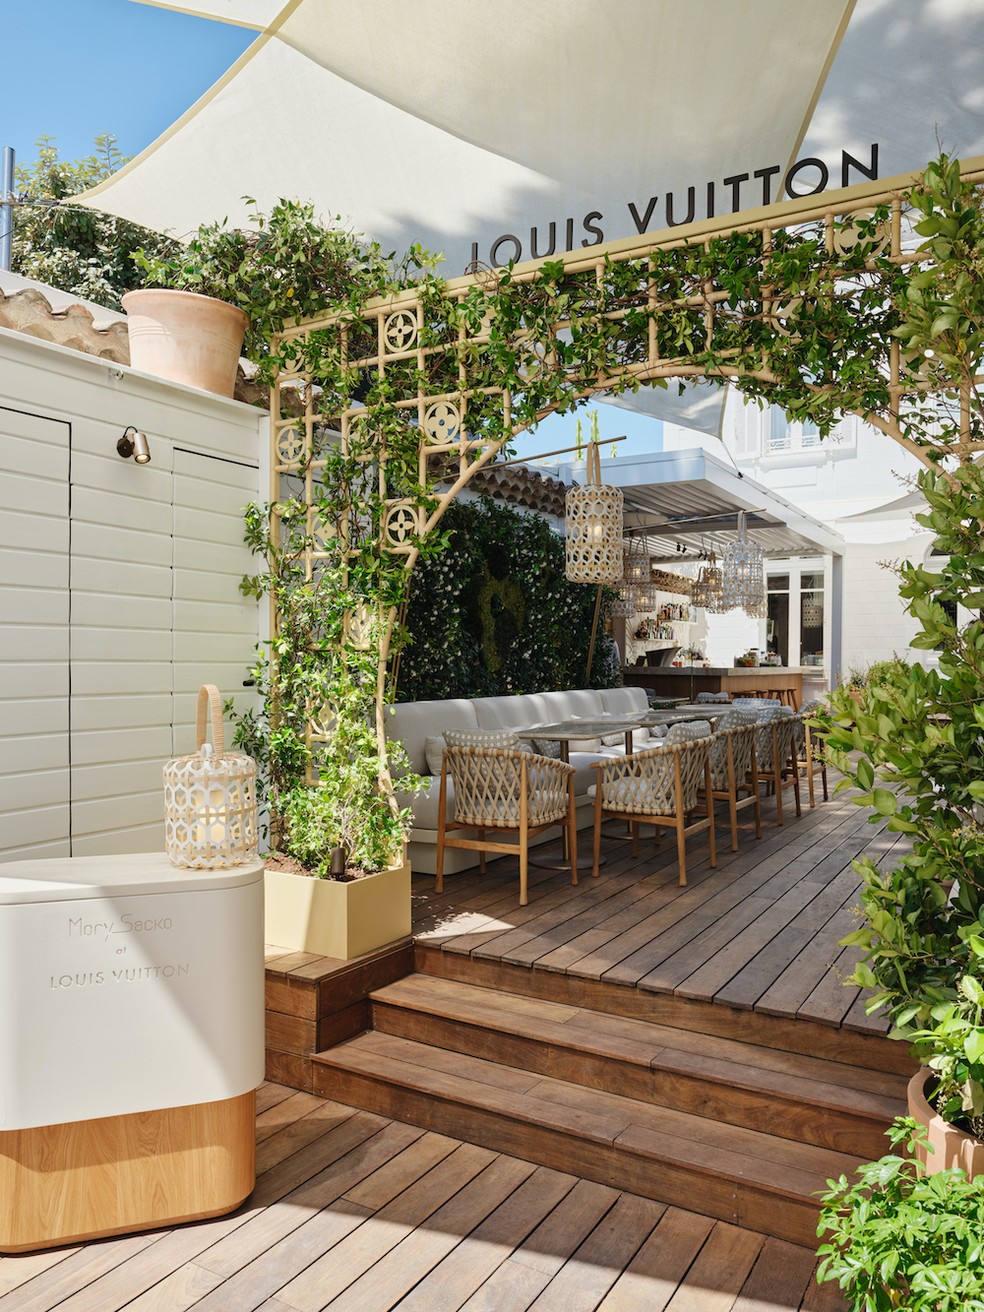 Louis Vuitton abre primeiro café e restaurante dentro da nova loja